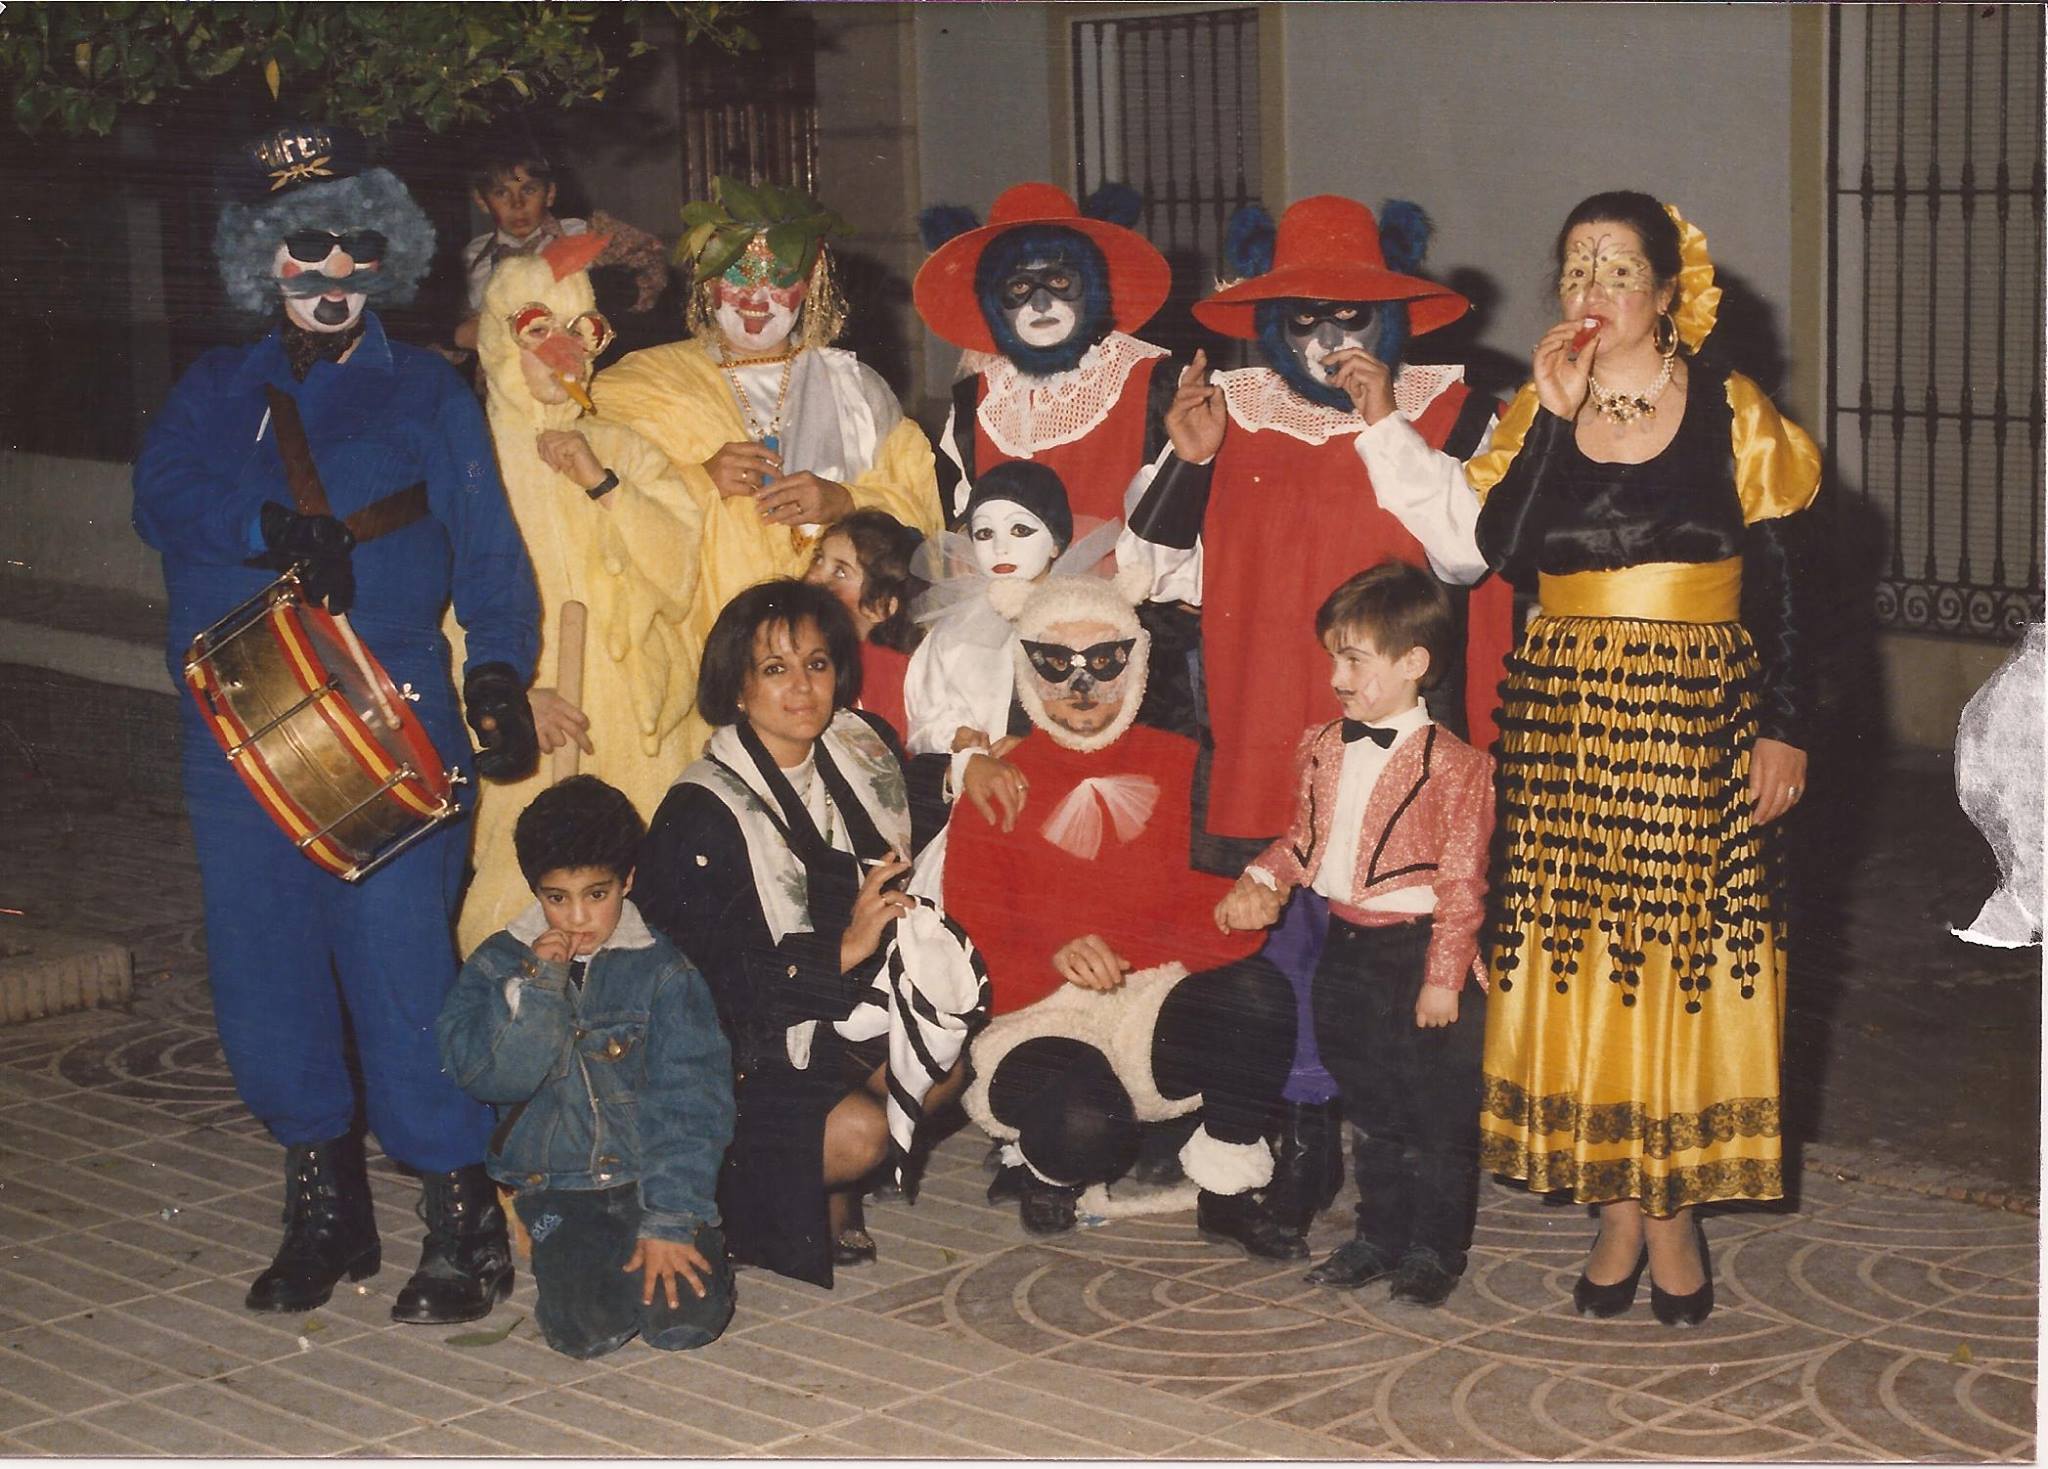 Fotos recuerdo del Carnaval de Cabra